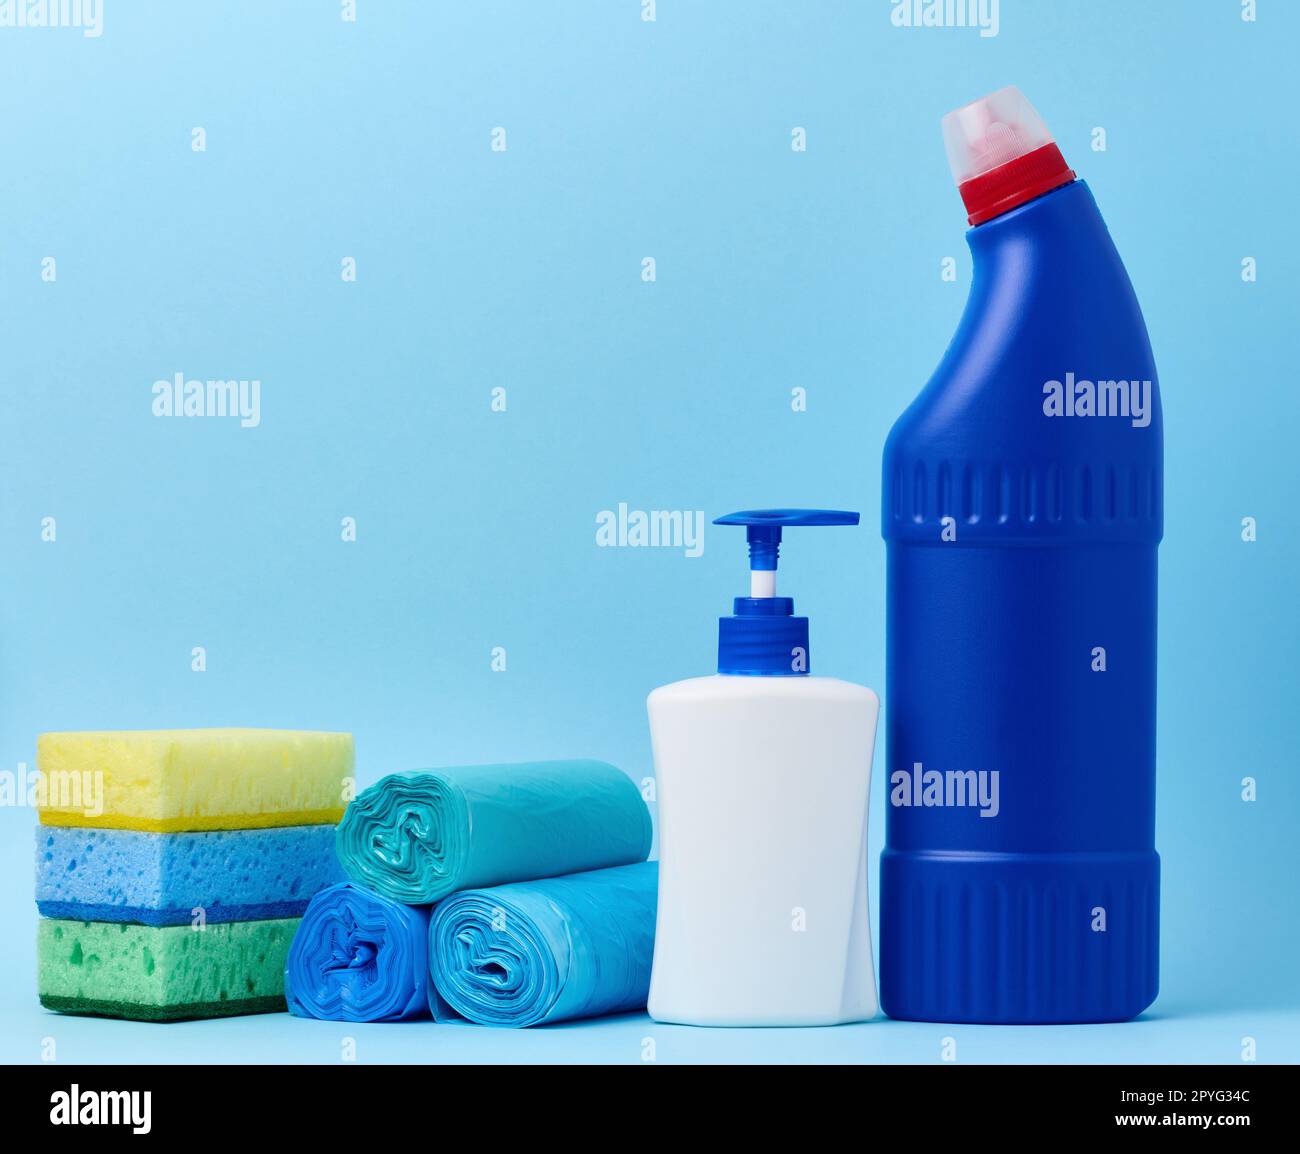 Bouteille en plastique blanc avec distributeur et sacs poubelle, éponges et bouteille bleue avec détergent sur fond bleu Banque D'Images